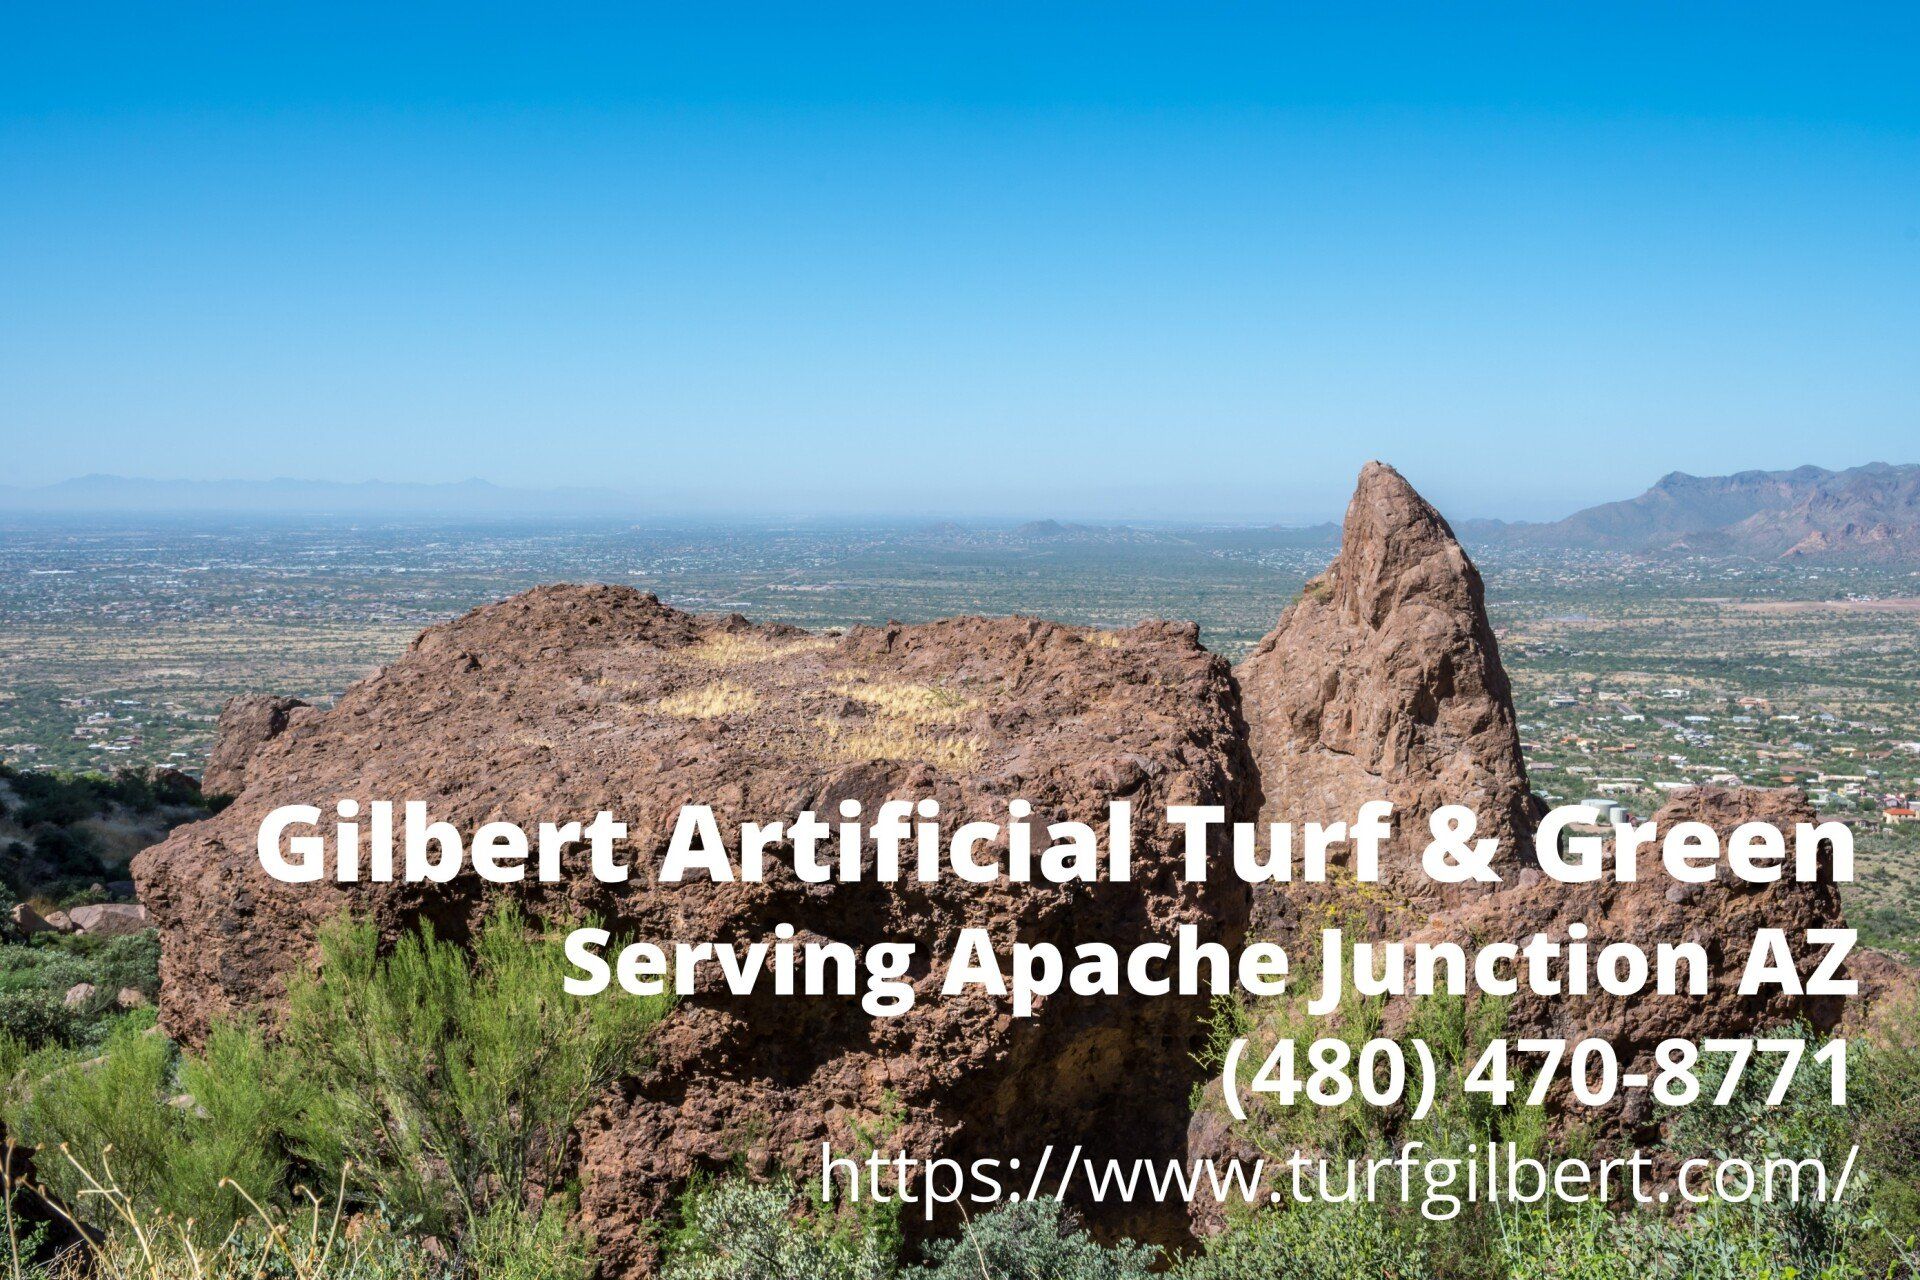 contact details of Gilbert-Artificial Turf & Green - an artificial grass installation company serving Apache Junction, AZ